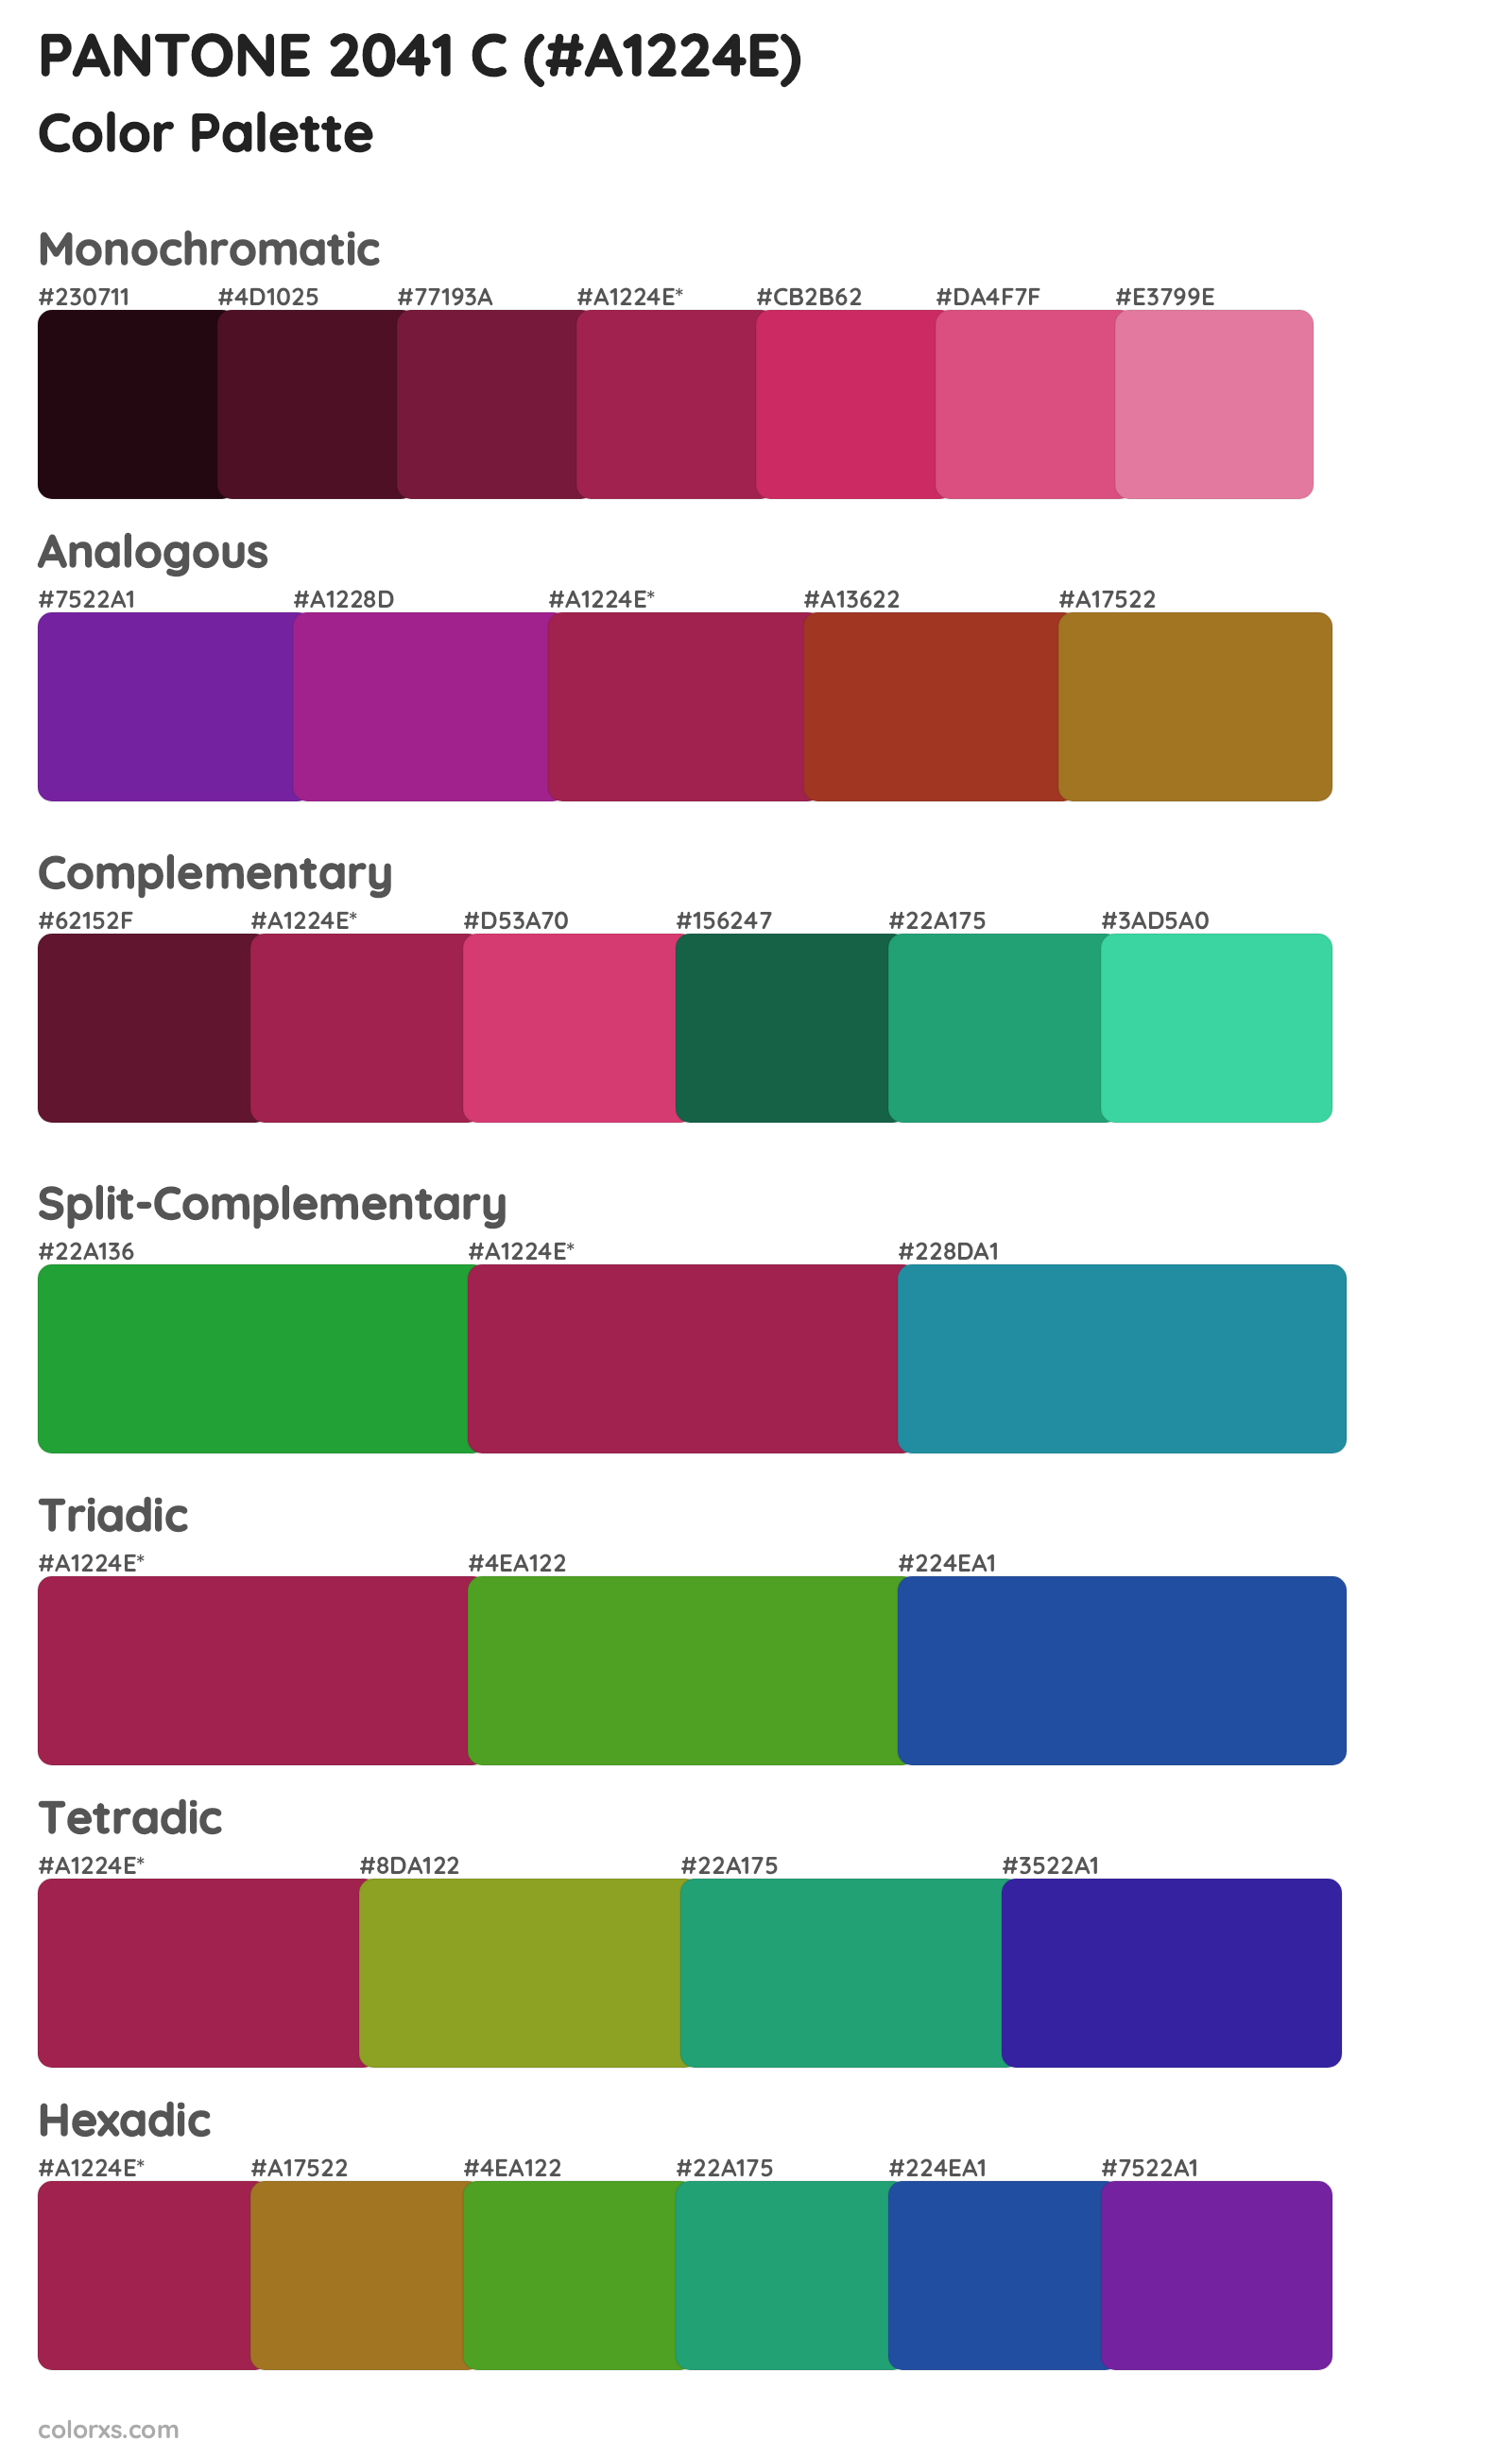 PANTONE 2041 C Color Scheme Palettes